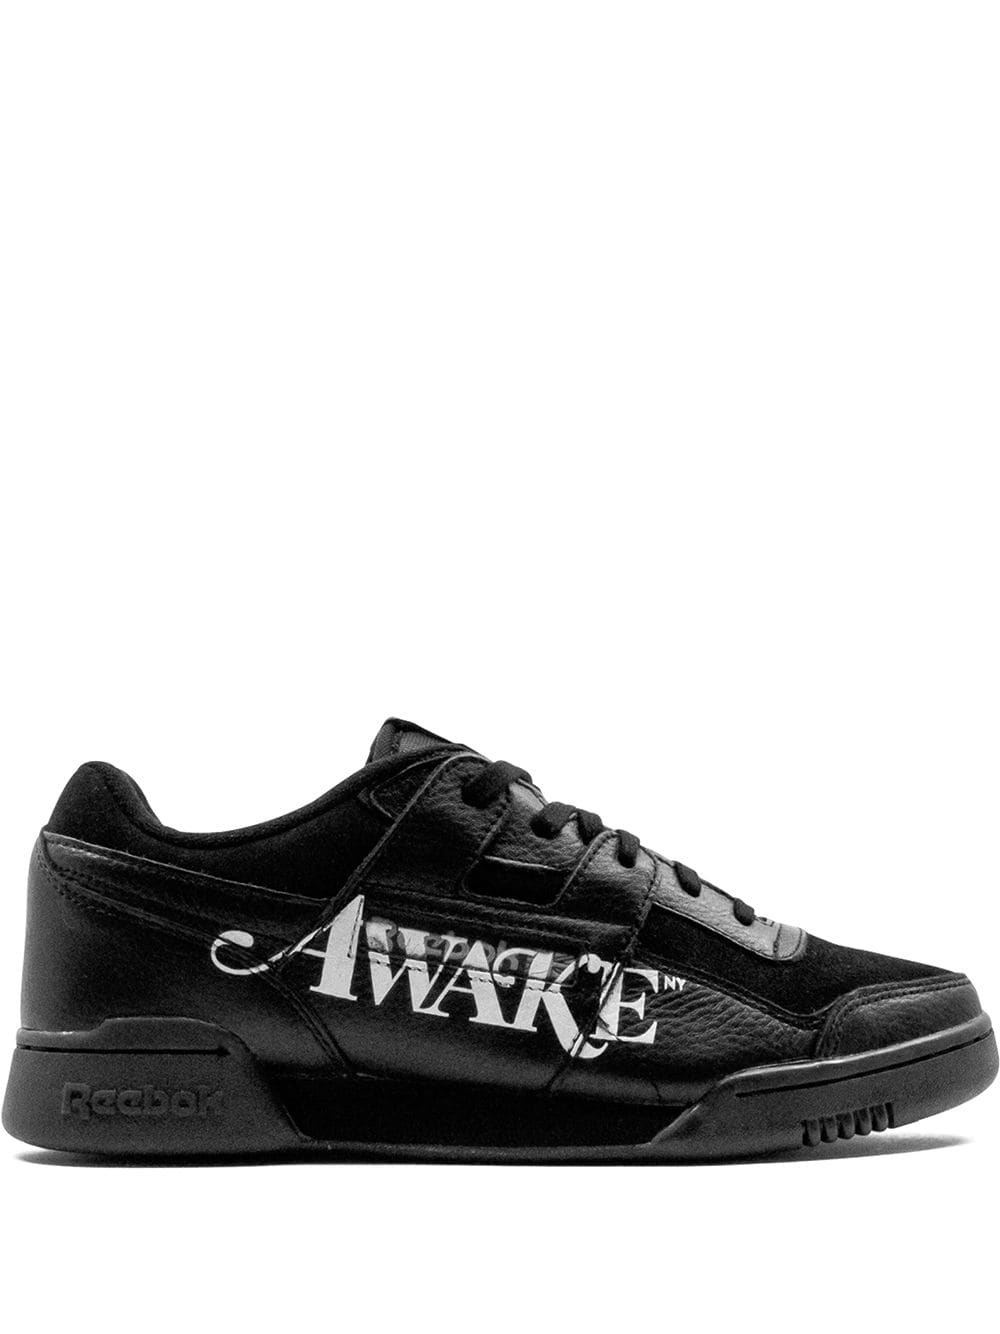 Reebok Workout Plus "Awake NY" sneakers - Black von Reebok